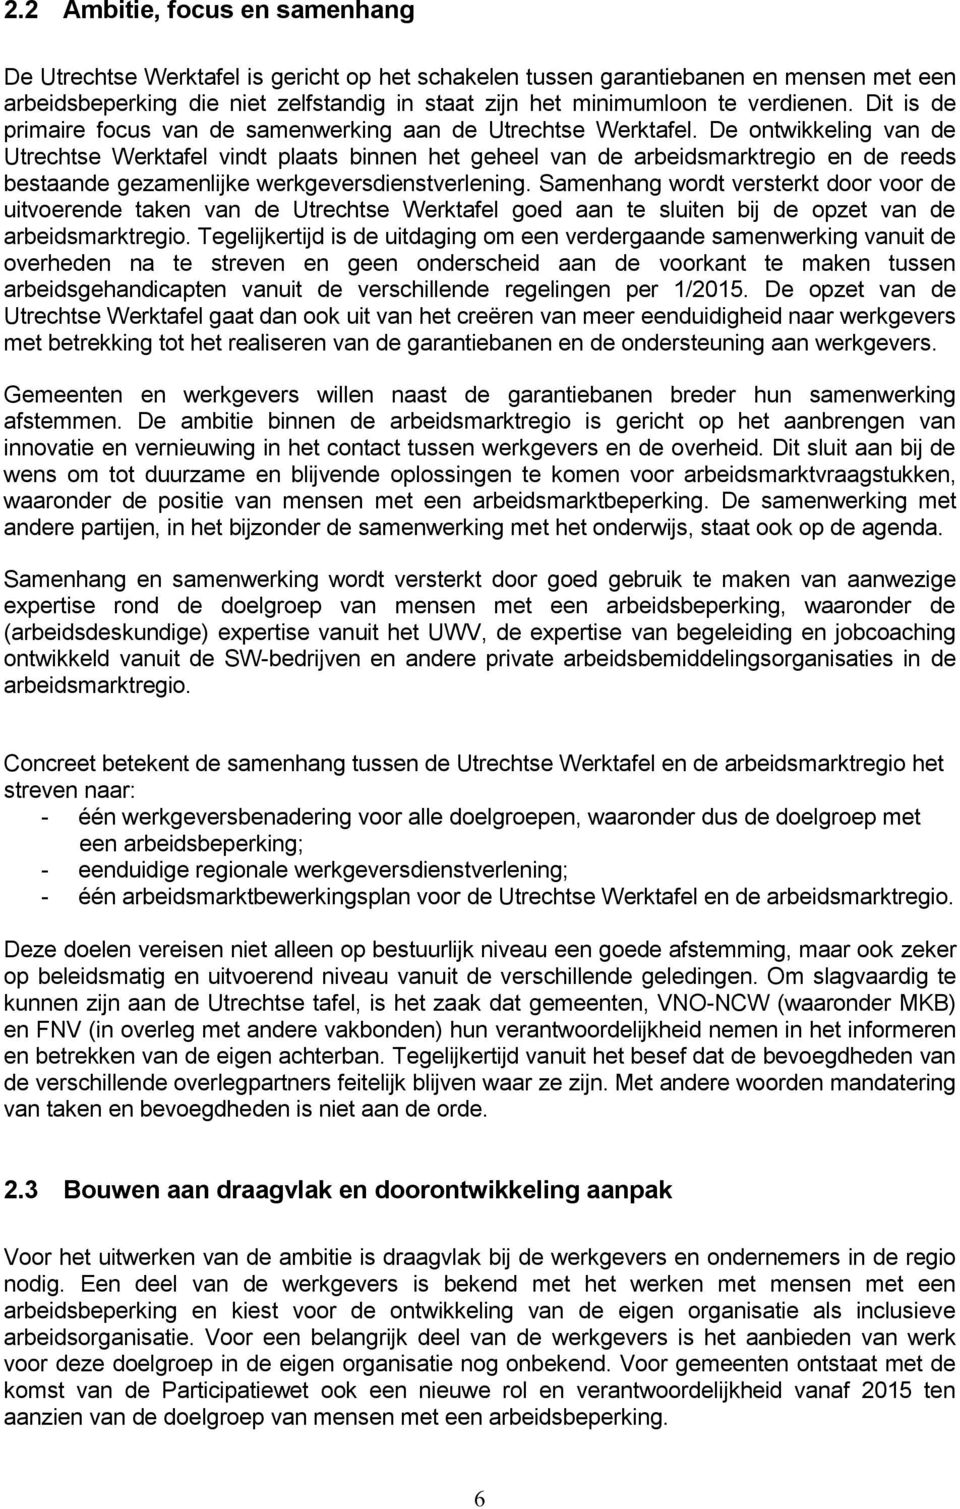 De ontwikkeling van de Utrechtse Werktafel vindt plaats binnen het geheel van de arbeidsmarktregio en de reeds bestaande gezamenlijke werkgeversdienstverlening.